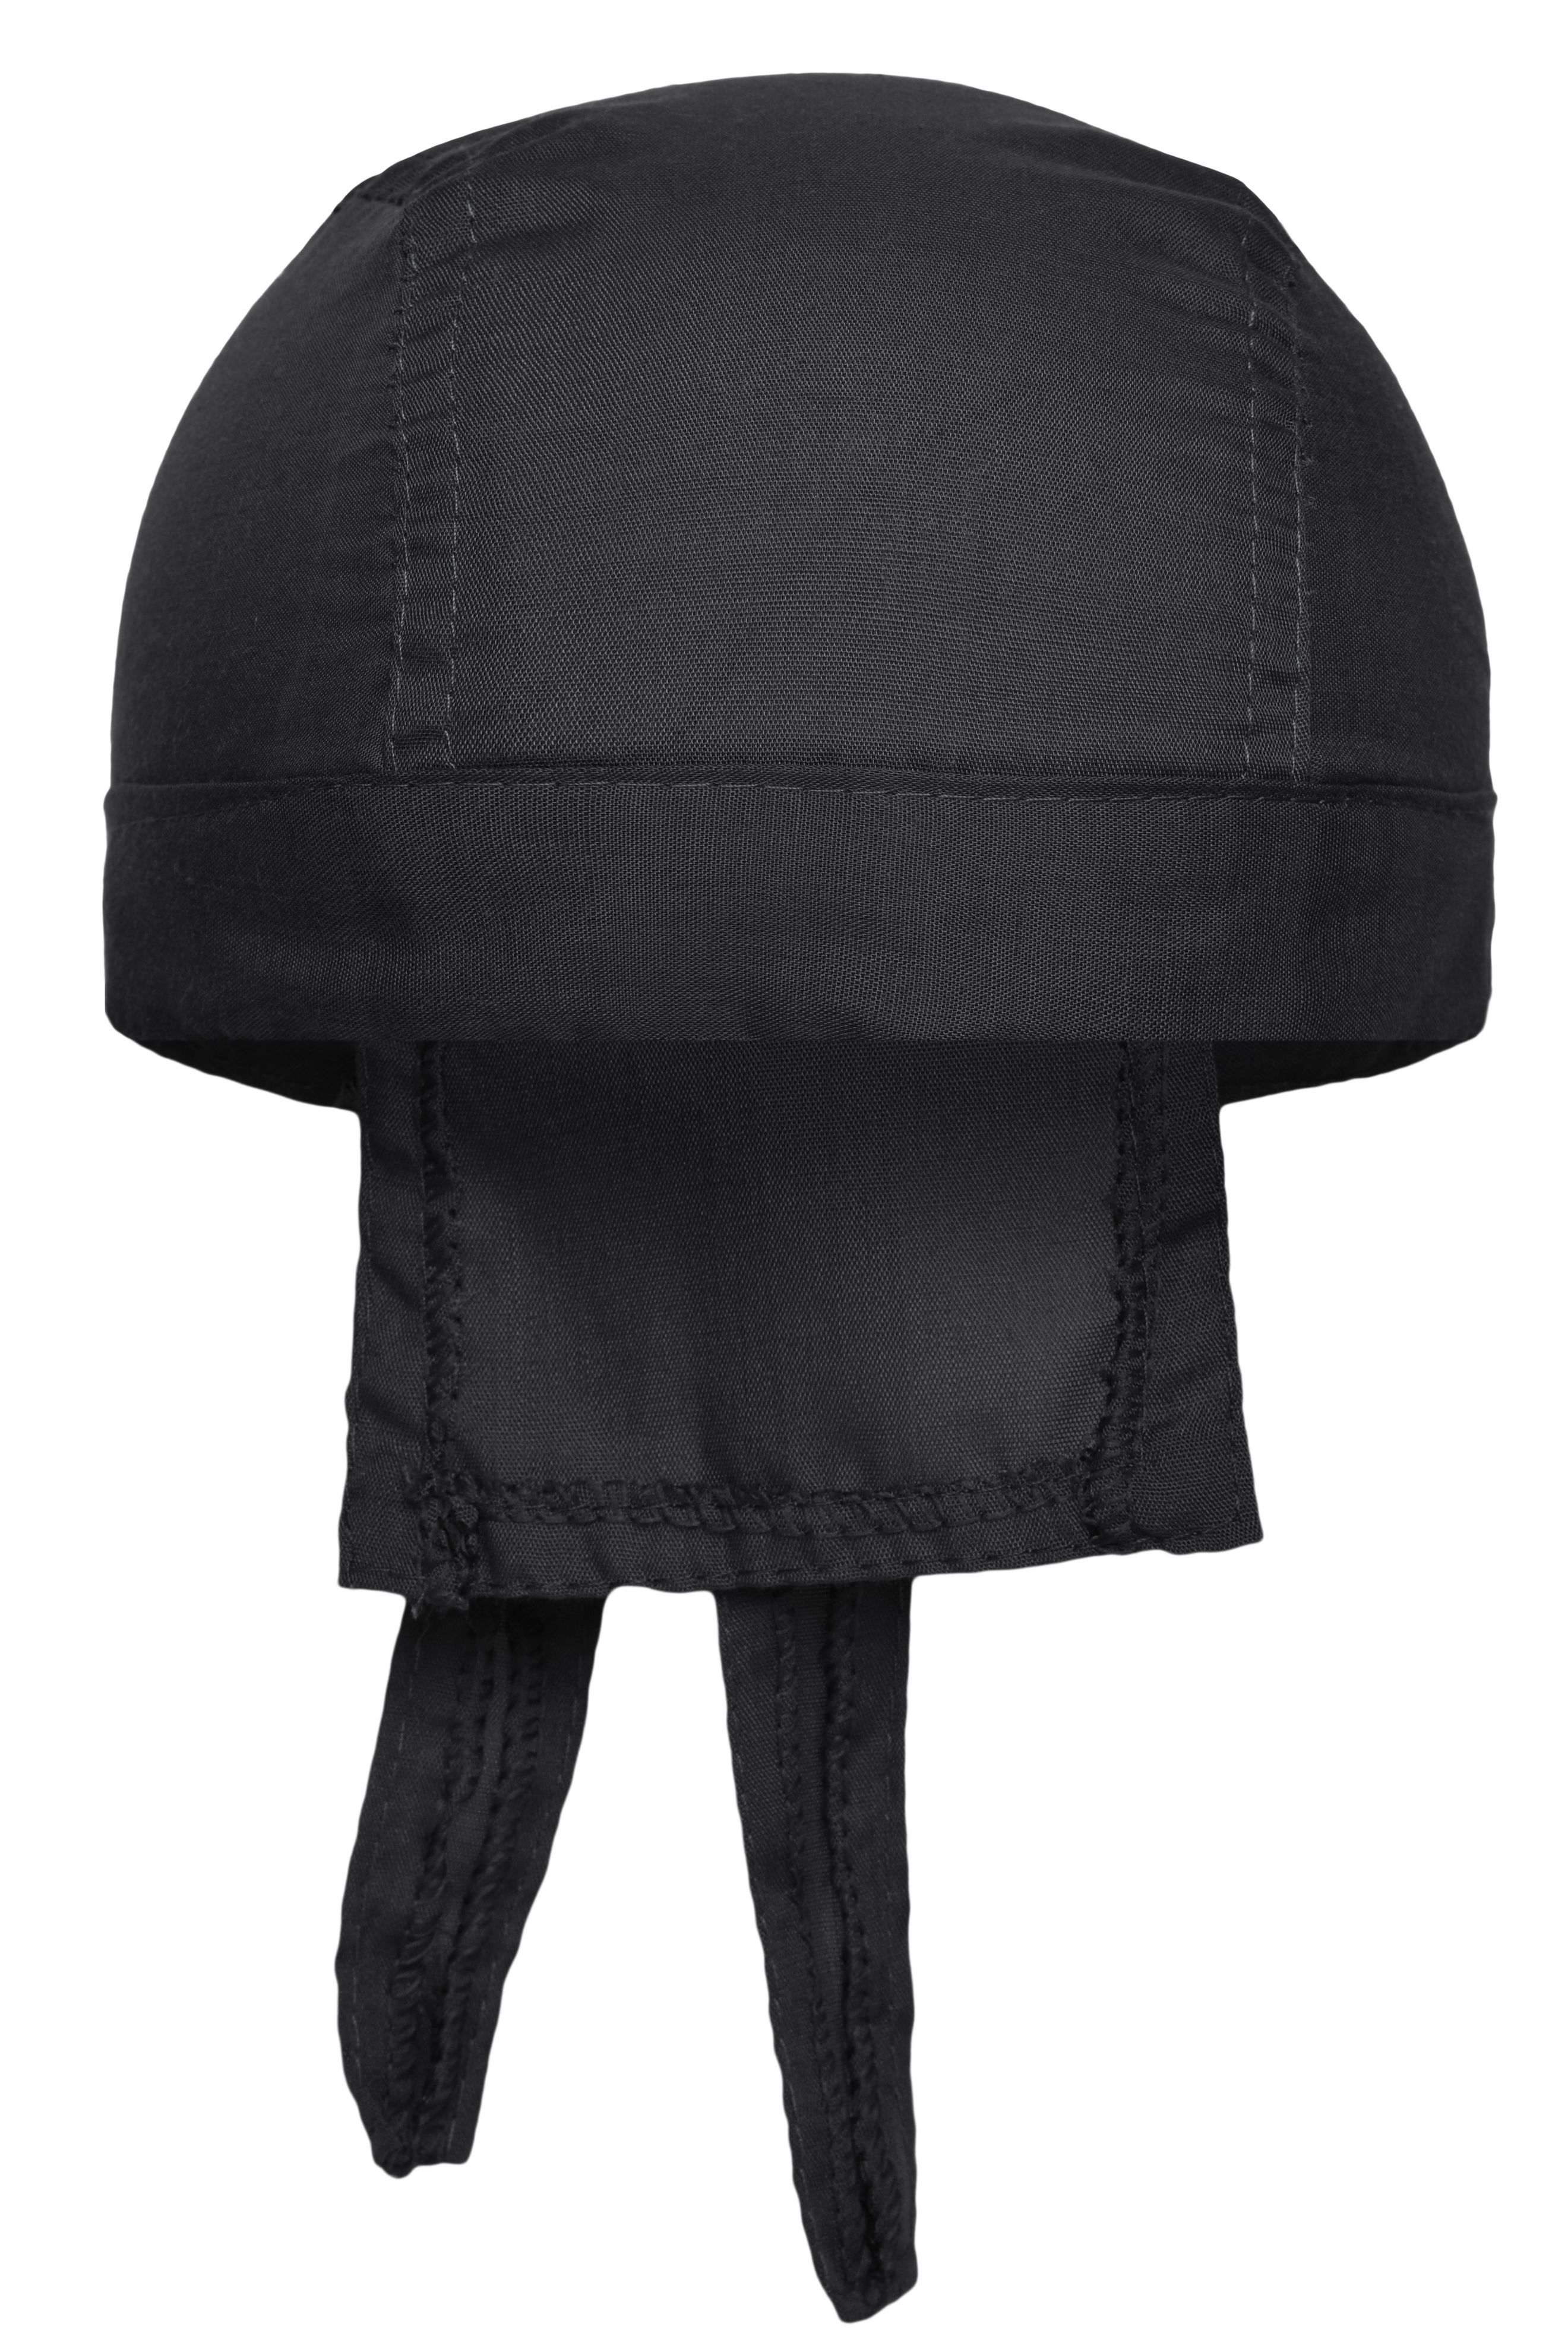 Unisex Bandana Hat Black-Daiber